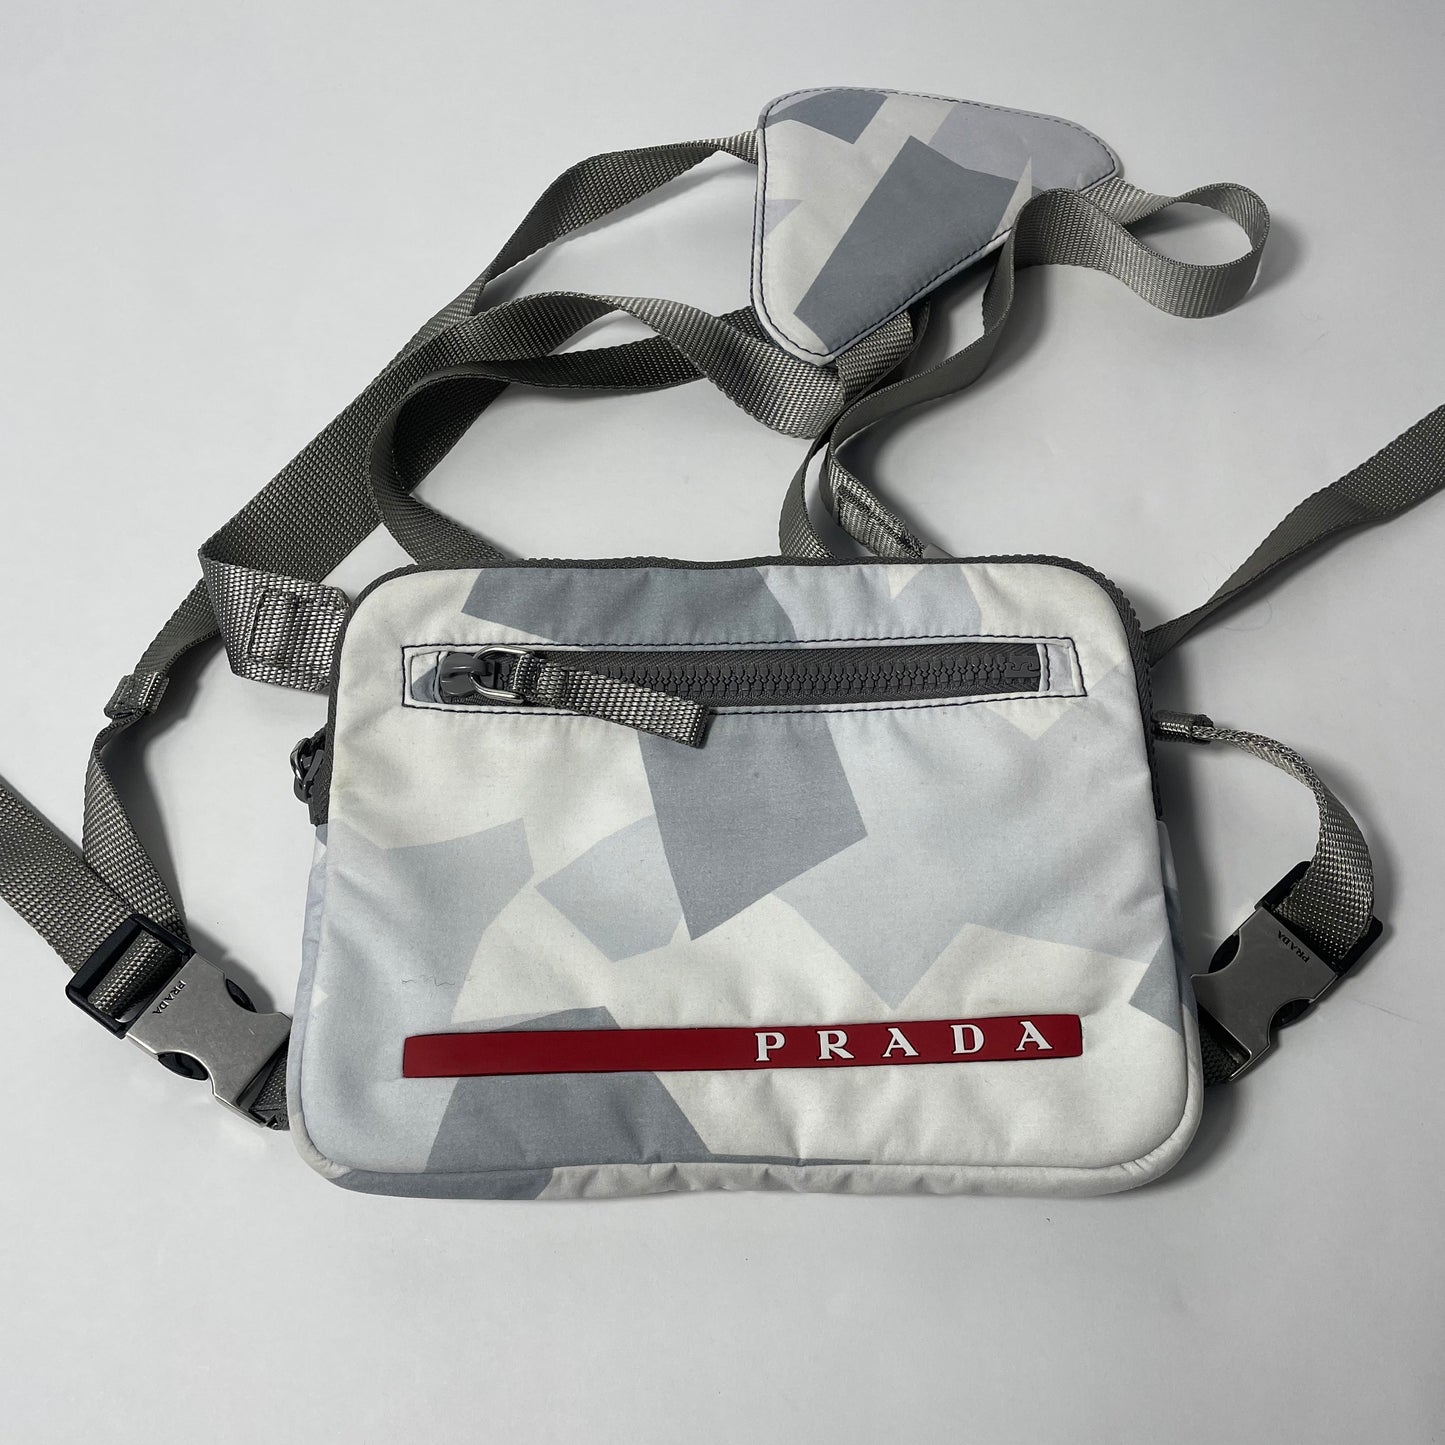 Prada Printed Technical Cross  Body Bag